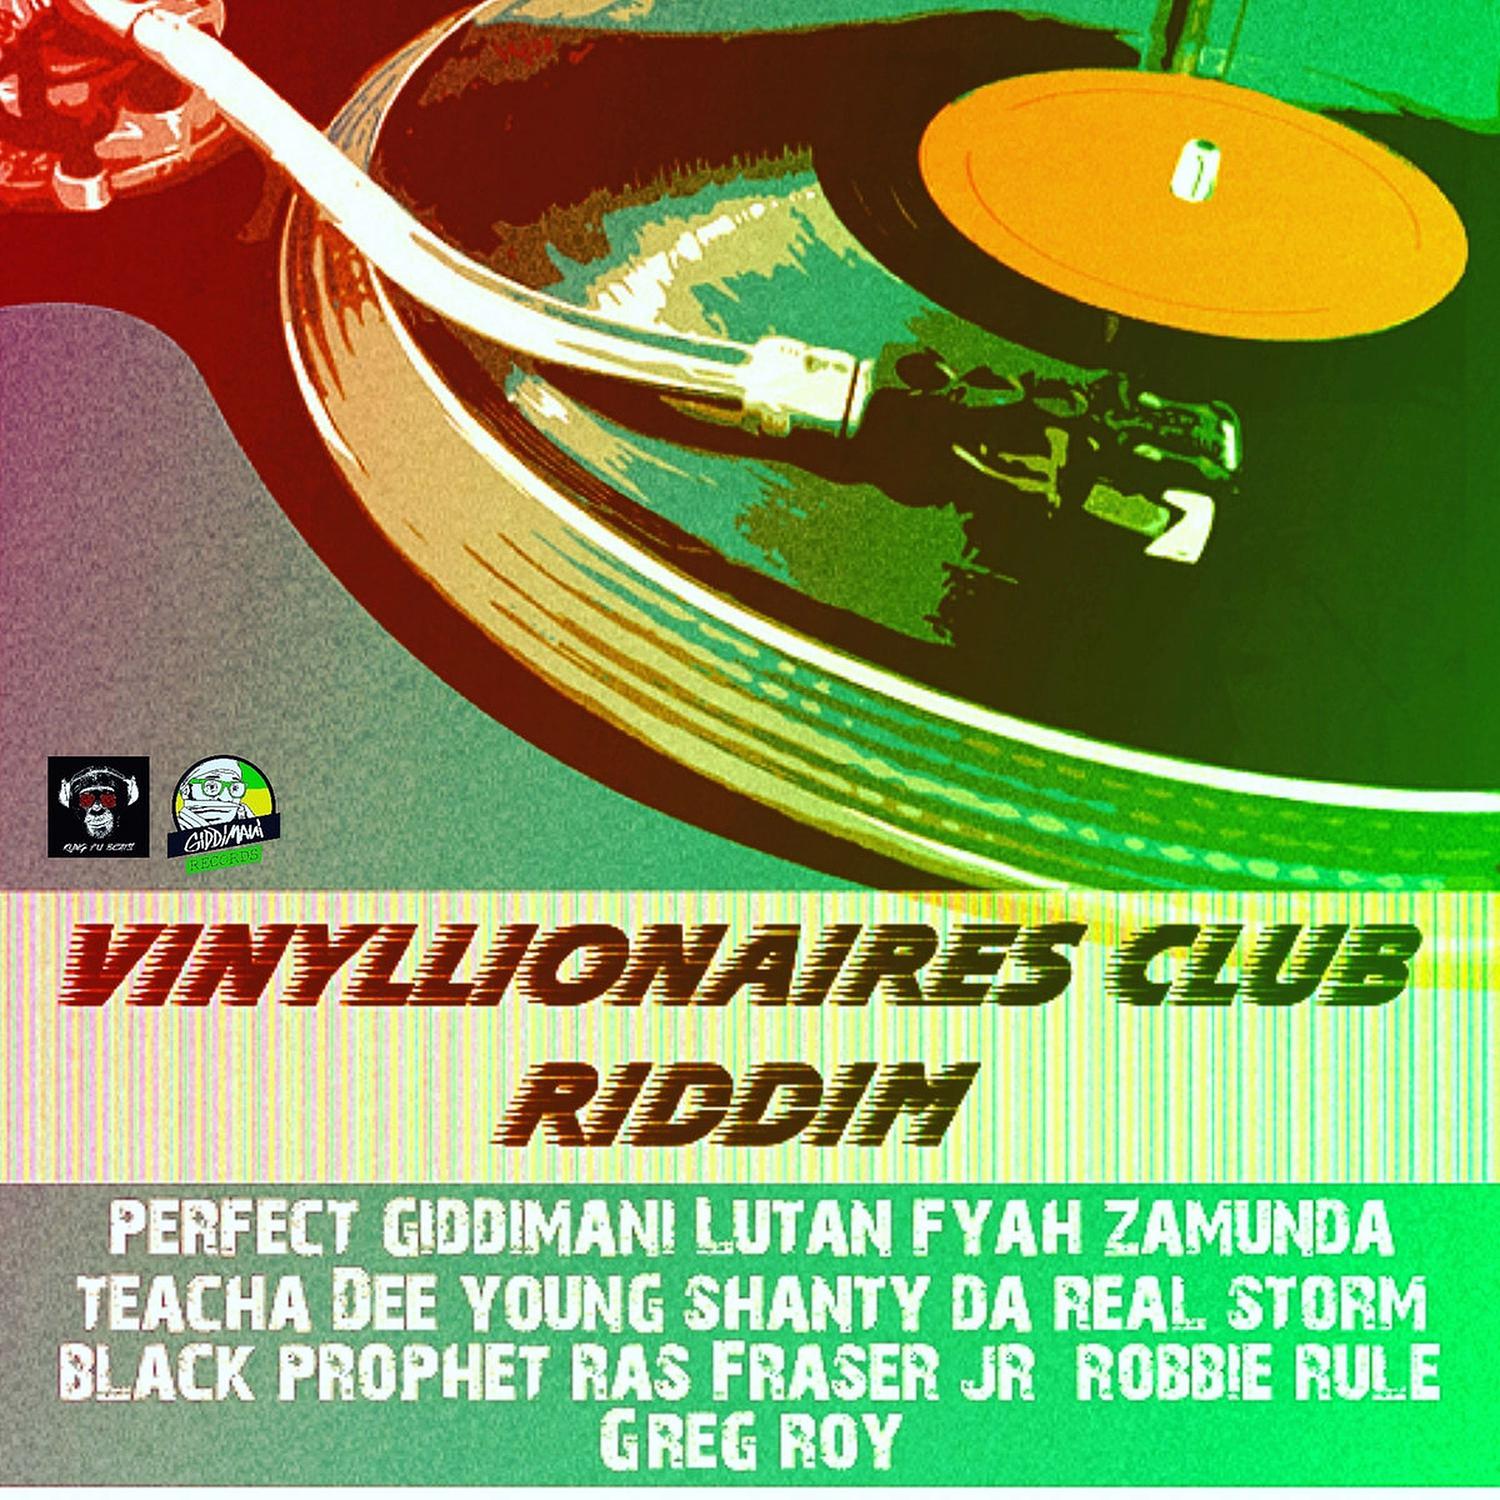 Vinyllionaires Club Riddim